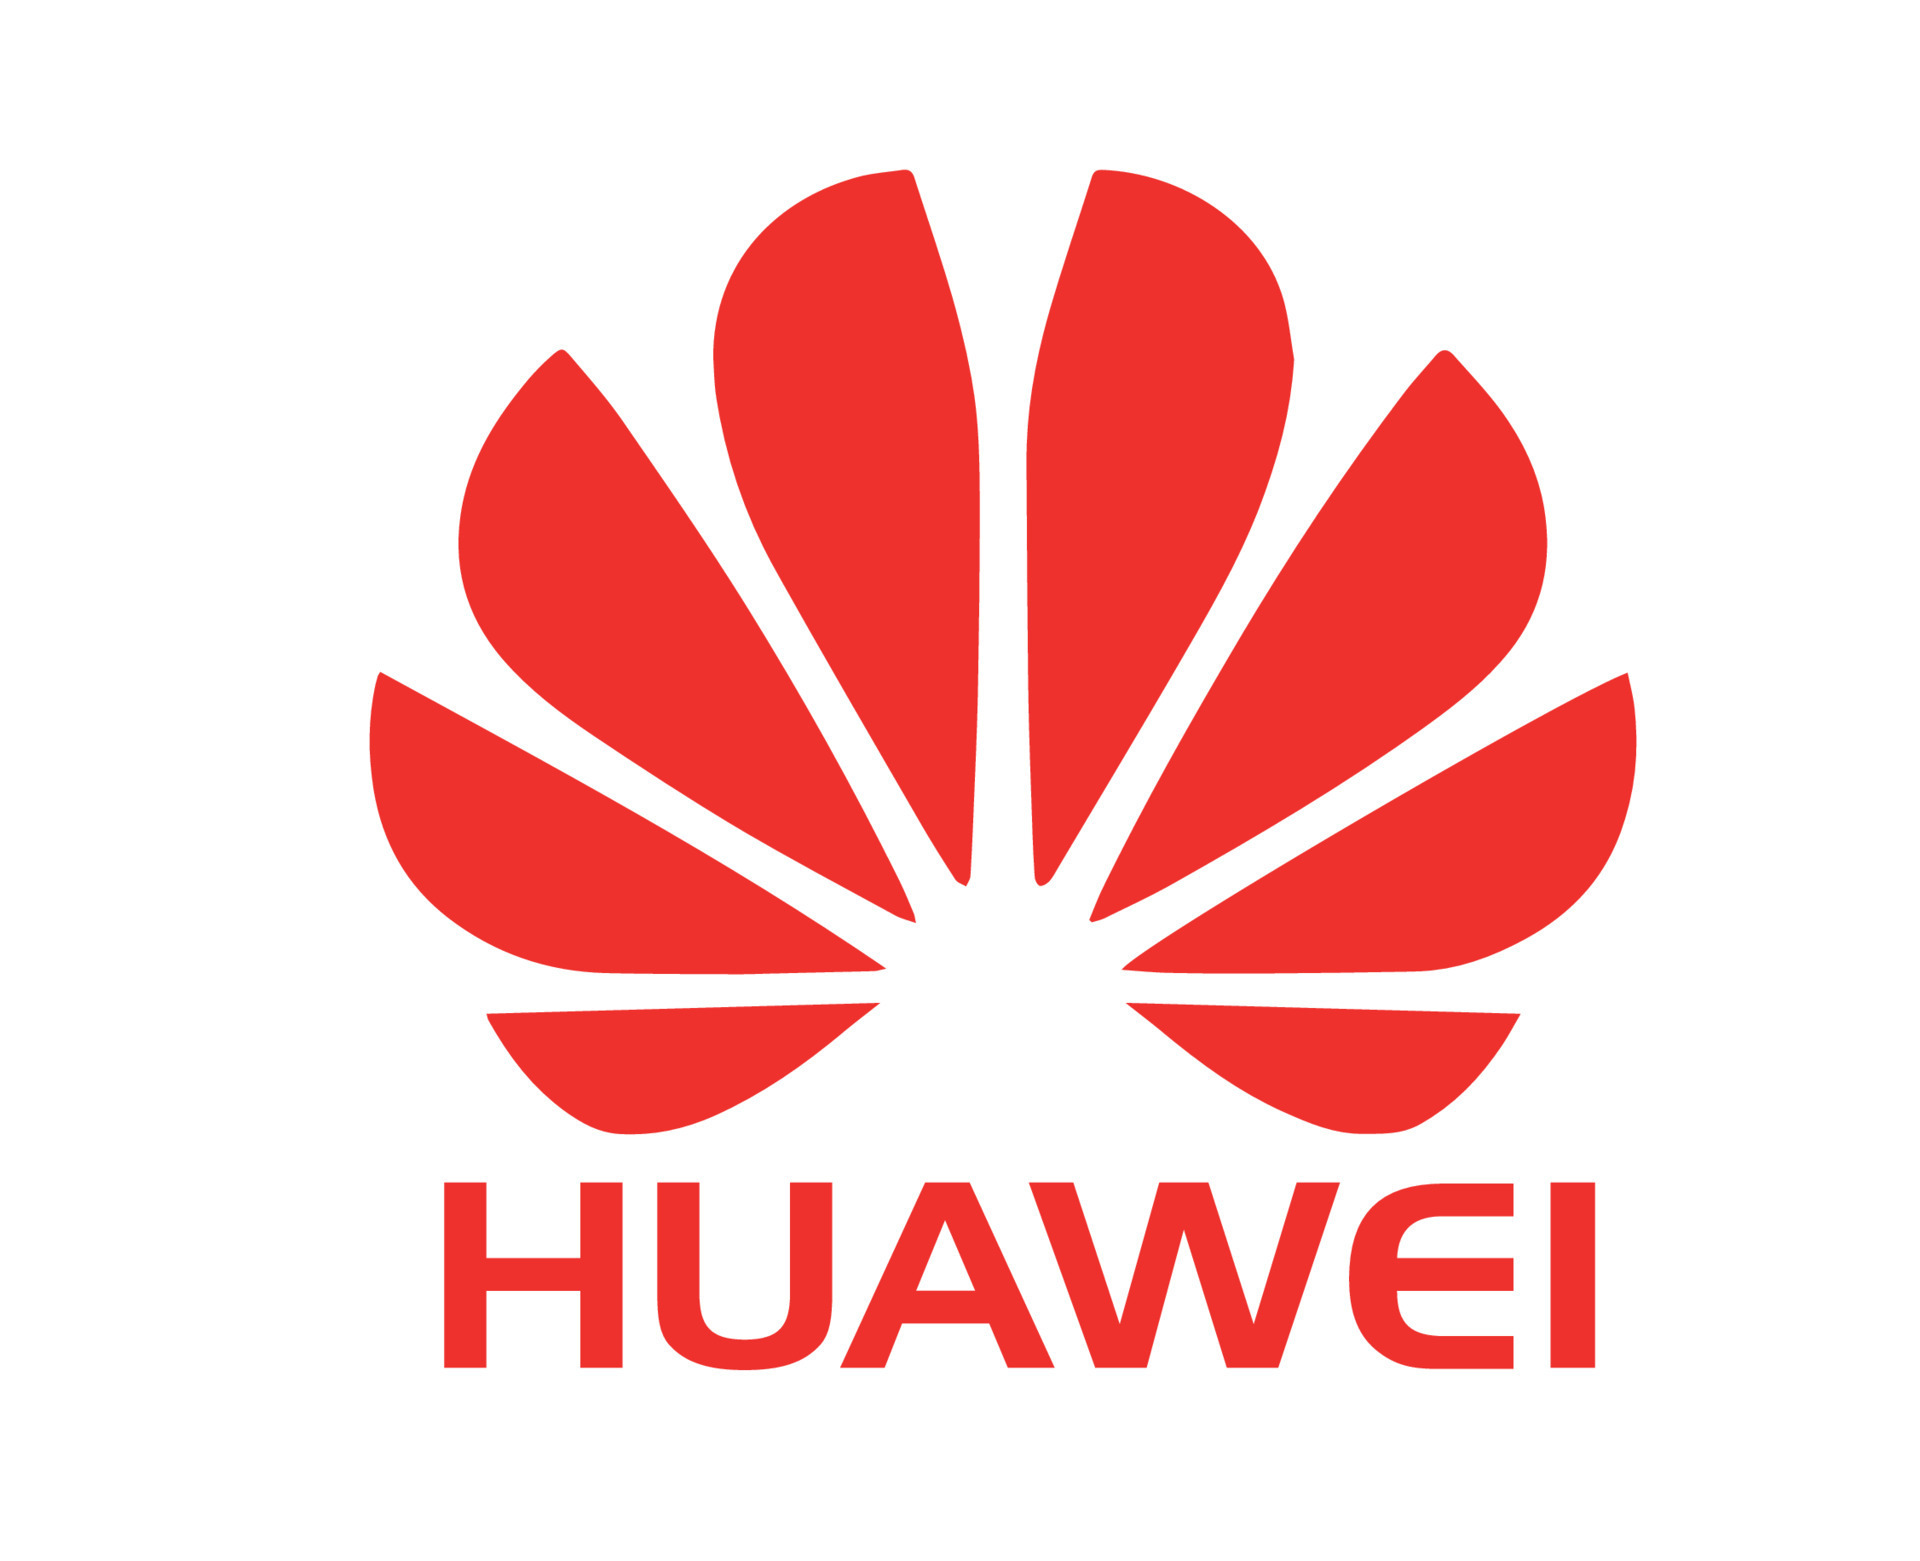 Hoe bundel Tact huawei logo merk telefoon symbool met naam rood ontwerp China mobiel vector  illustratie 20927381 - Download Free Vectors, Vector Bestanden, Ontwerpen  Templates